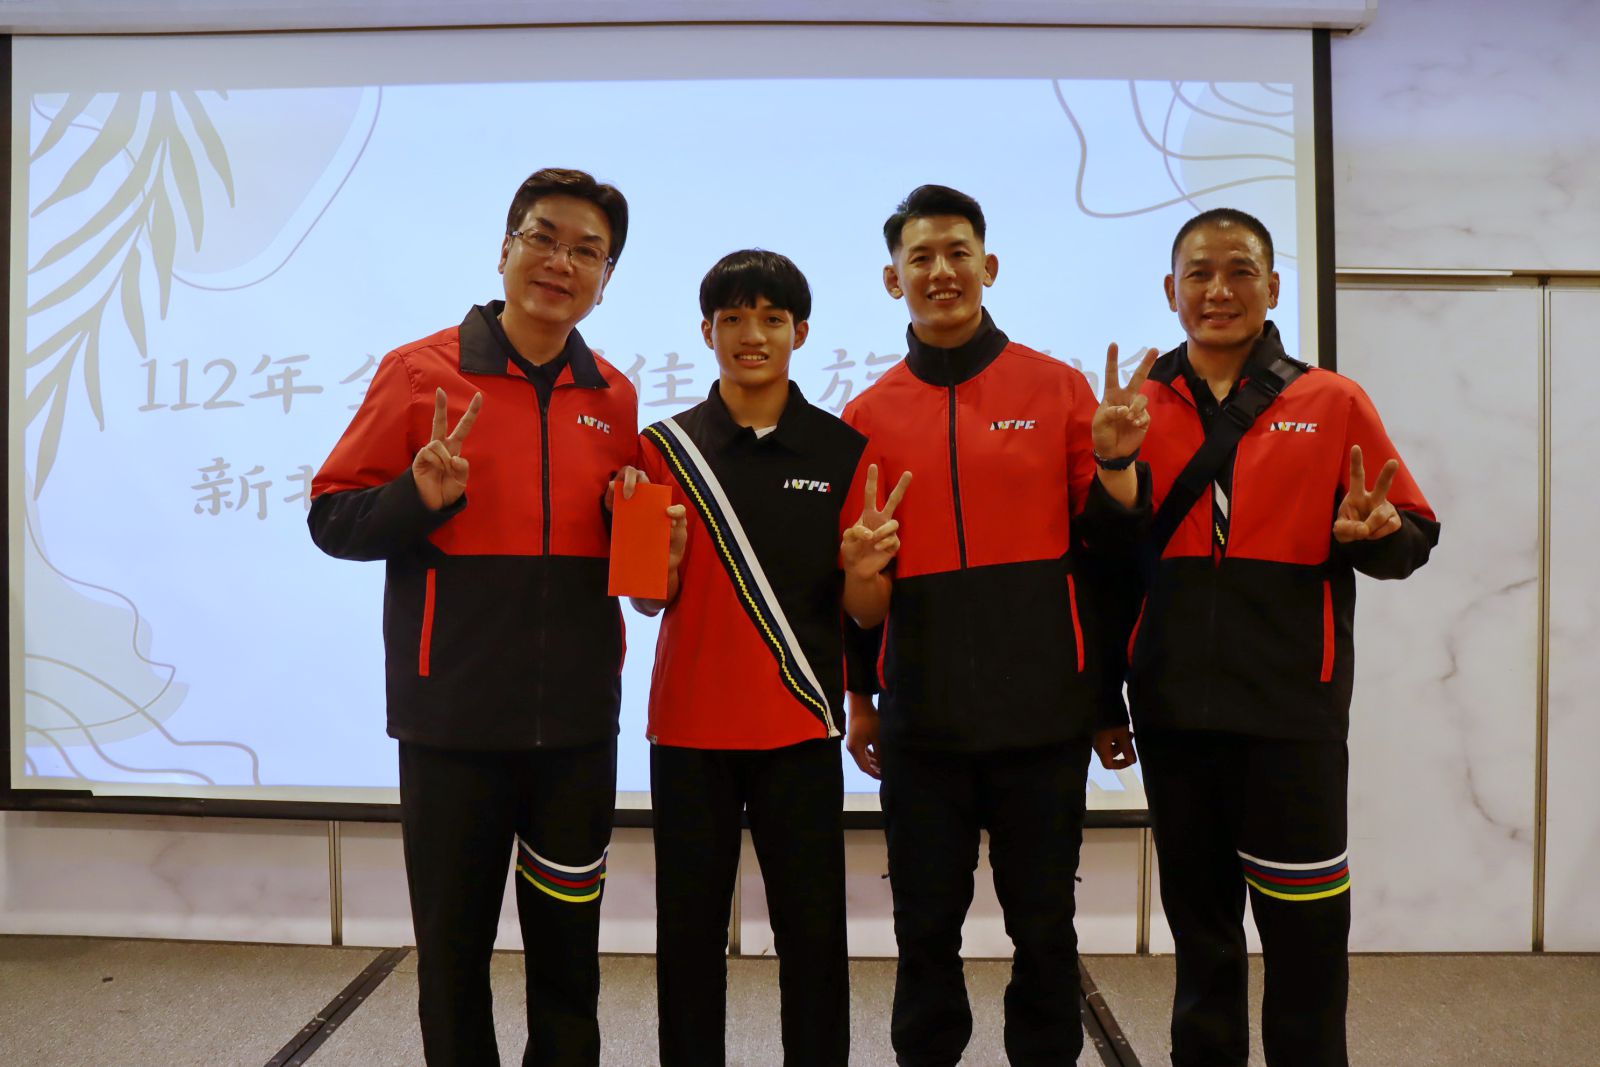 新北市劉和然副市長(右一)預祝角力青少年組的鍾俊華選手(右二)於下屆賽事達到三連霸。